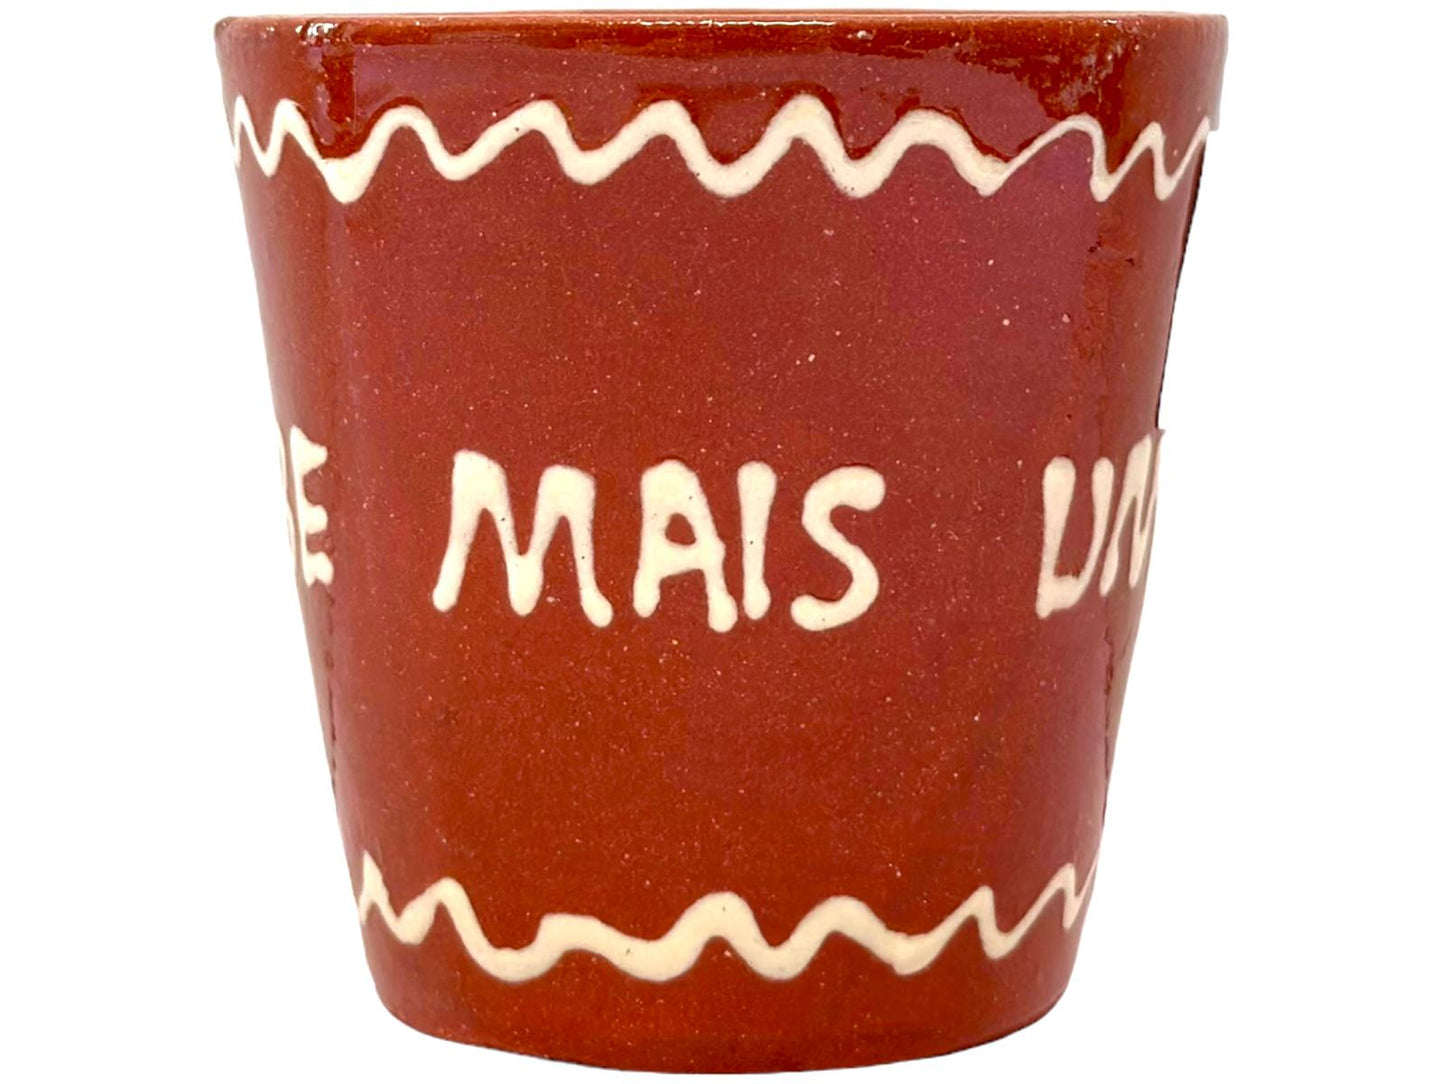 Edgar Picas Copo Direito Bebe Mais Um Copo Portuguese Terracotta Mug 8.5cm x 9cm